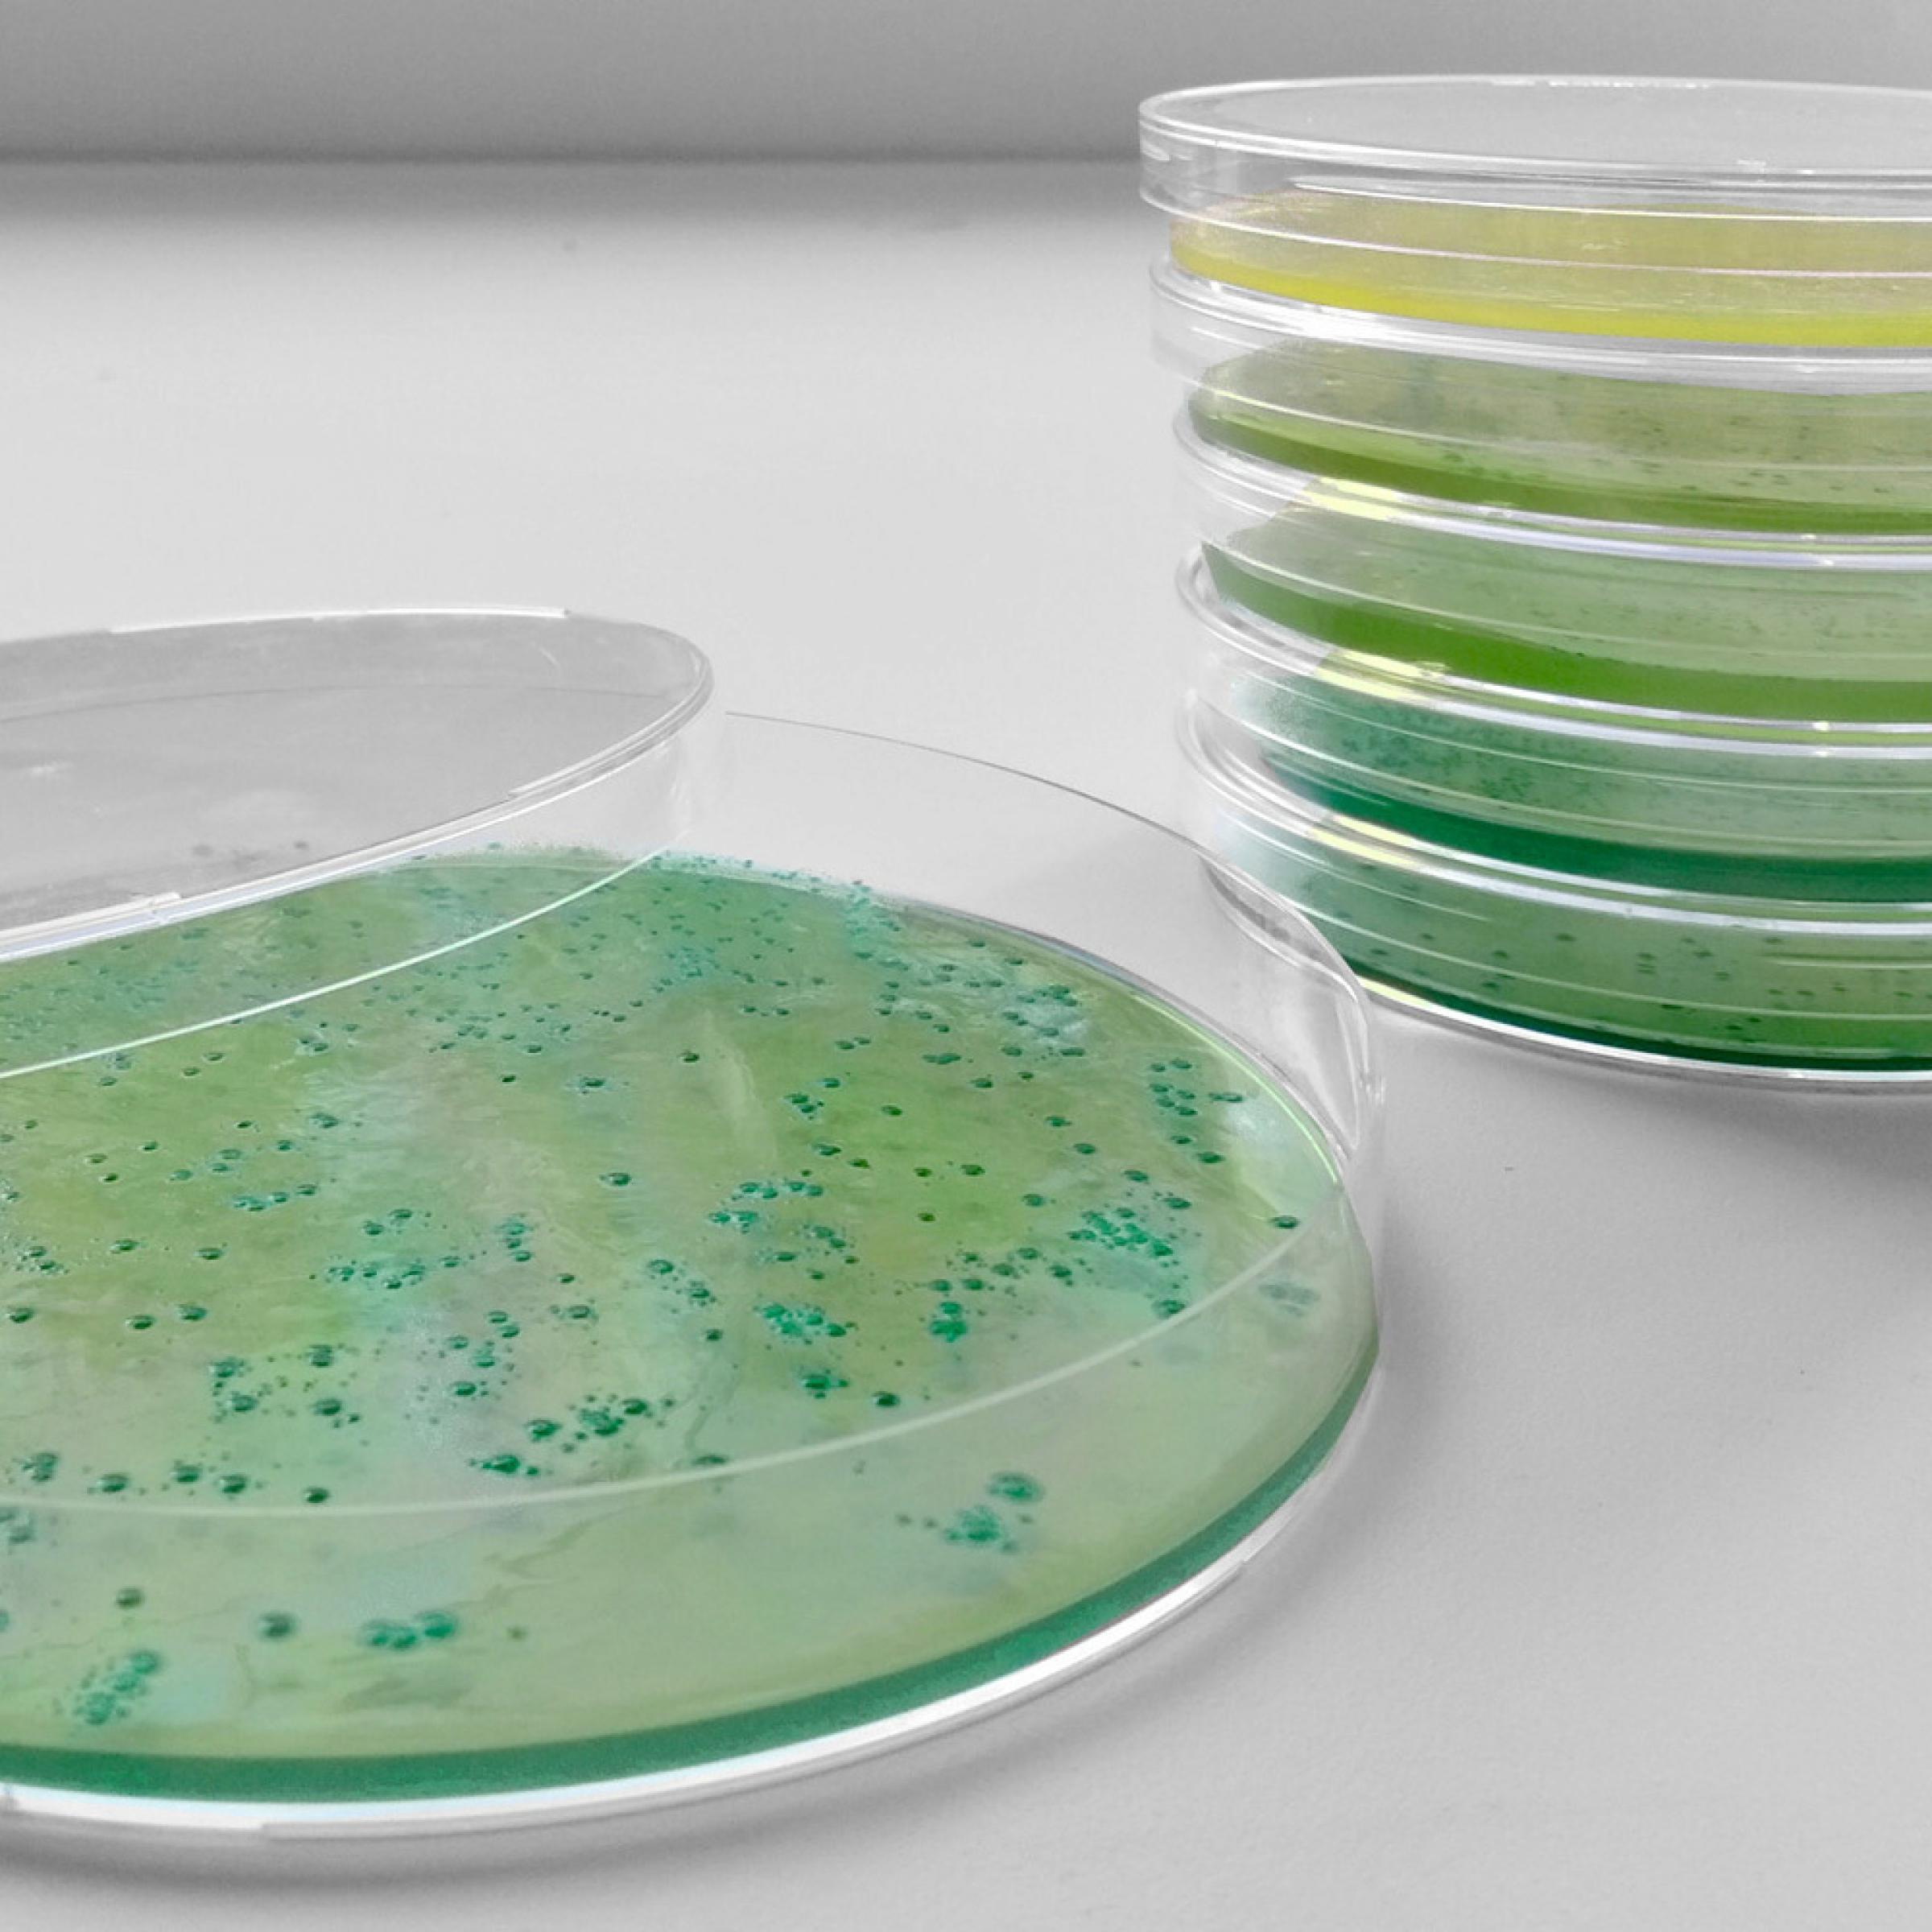 Gelb-grünlicher Agar in Petrischalen aus Kunststoff. Die fordere ist geöffnet, fünf weitere stehen versetzt dahinter aufeinander. Auf dem Agar wachsen grüne Bakterienkolonien.